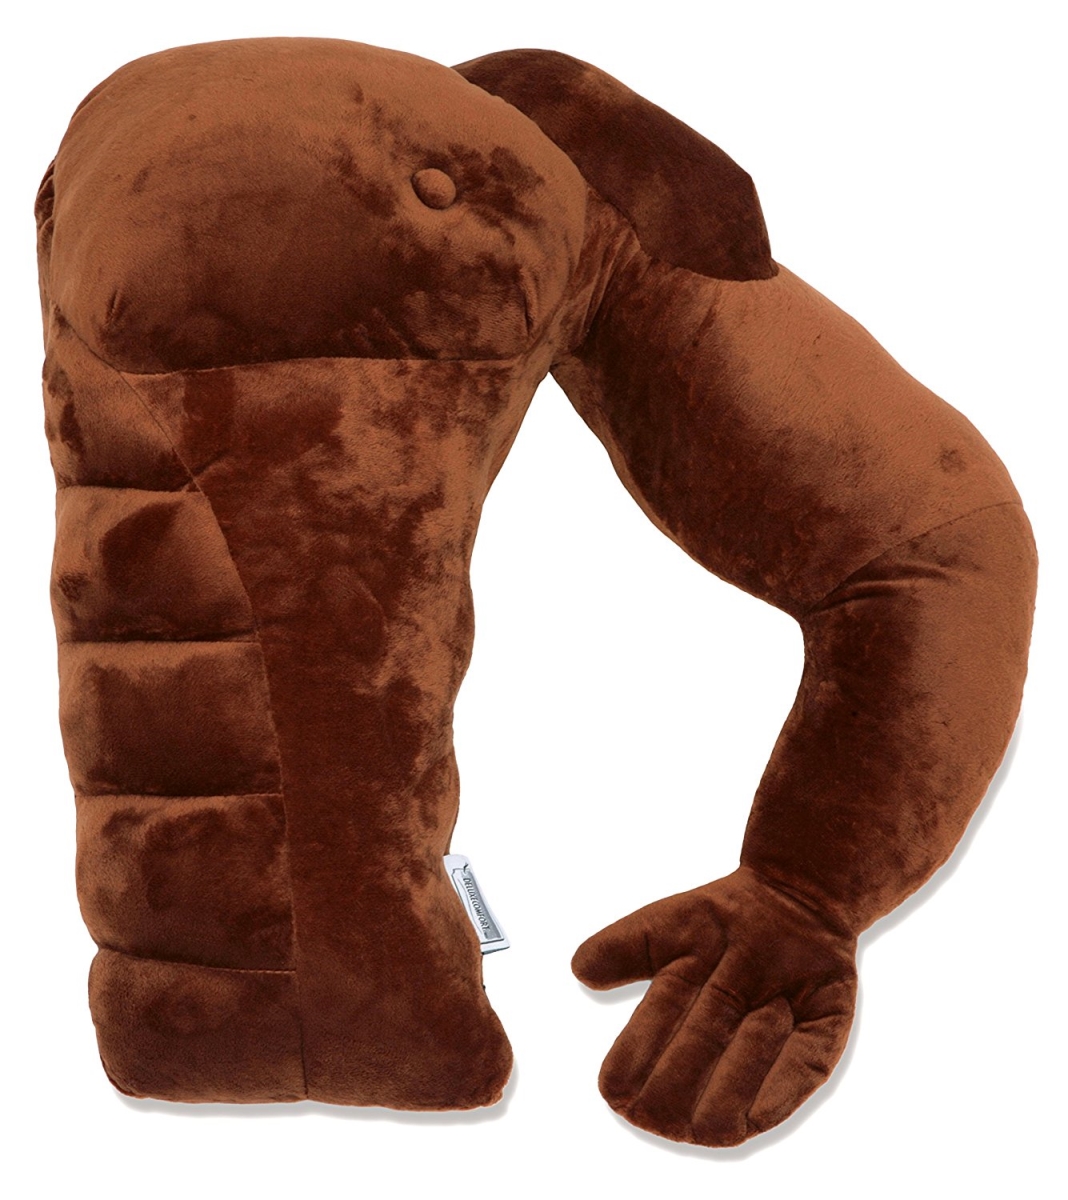 Boyfriend Pillow - Brown Man - Boyfriend Muscle Man Arm Plush Cotton Pillow - Brawny & Strong